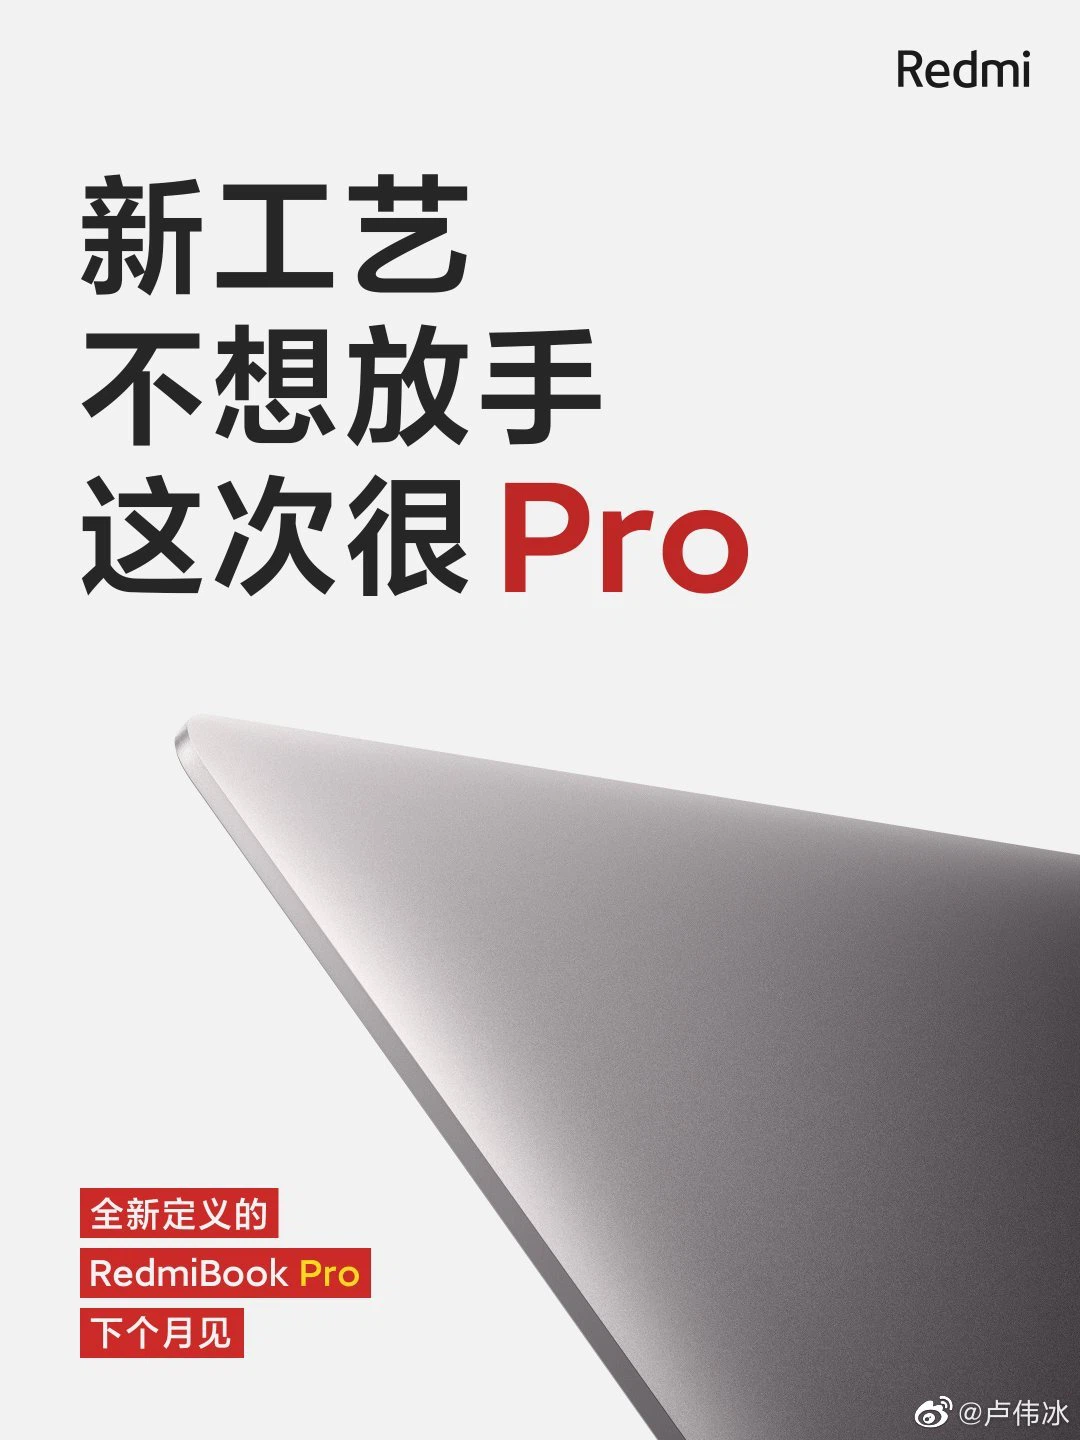 RedmiBook Pro: Thiết kế cao cấp, Intel thế hệ 11,
Nvidia MX450, ra mắt ngày 25/2